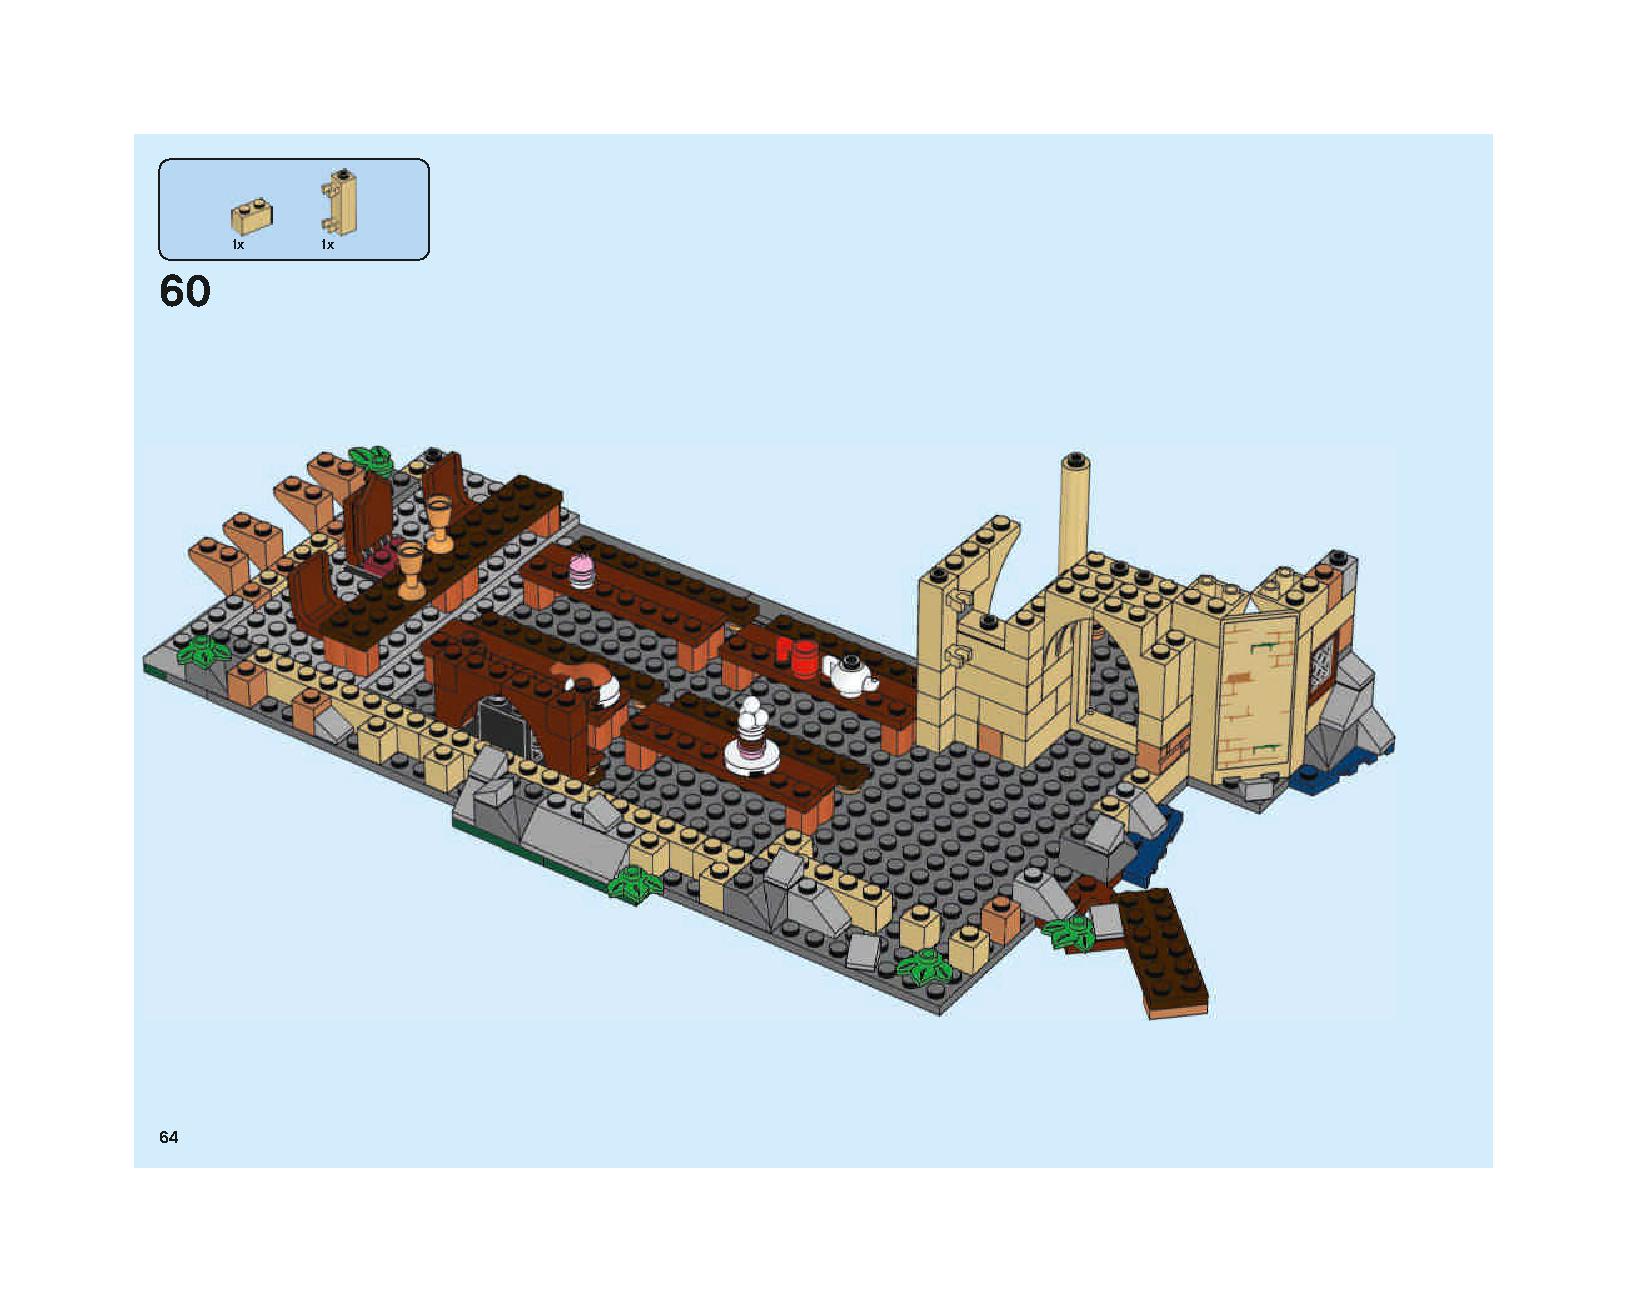 ホグワーツの大広間 75954 レゴの商品情報 レゴの説明書・組立方法 64 page